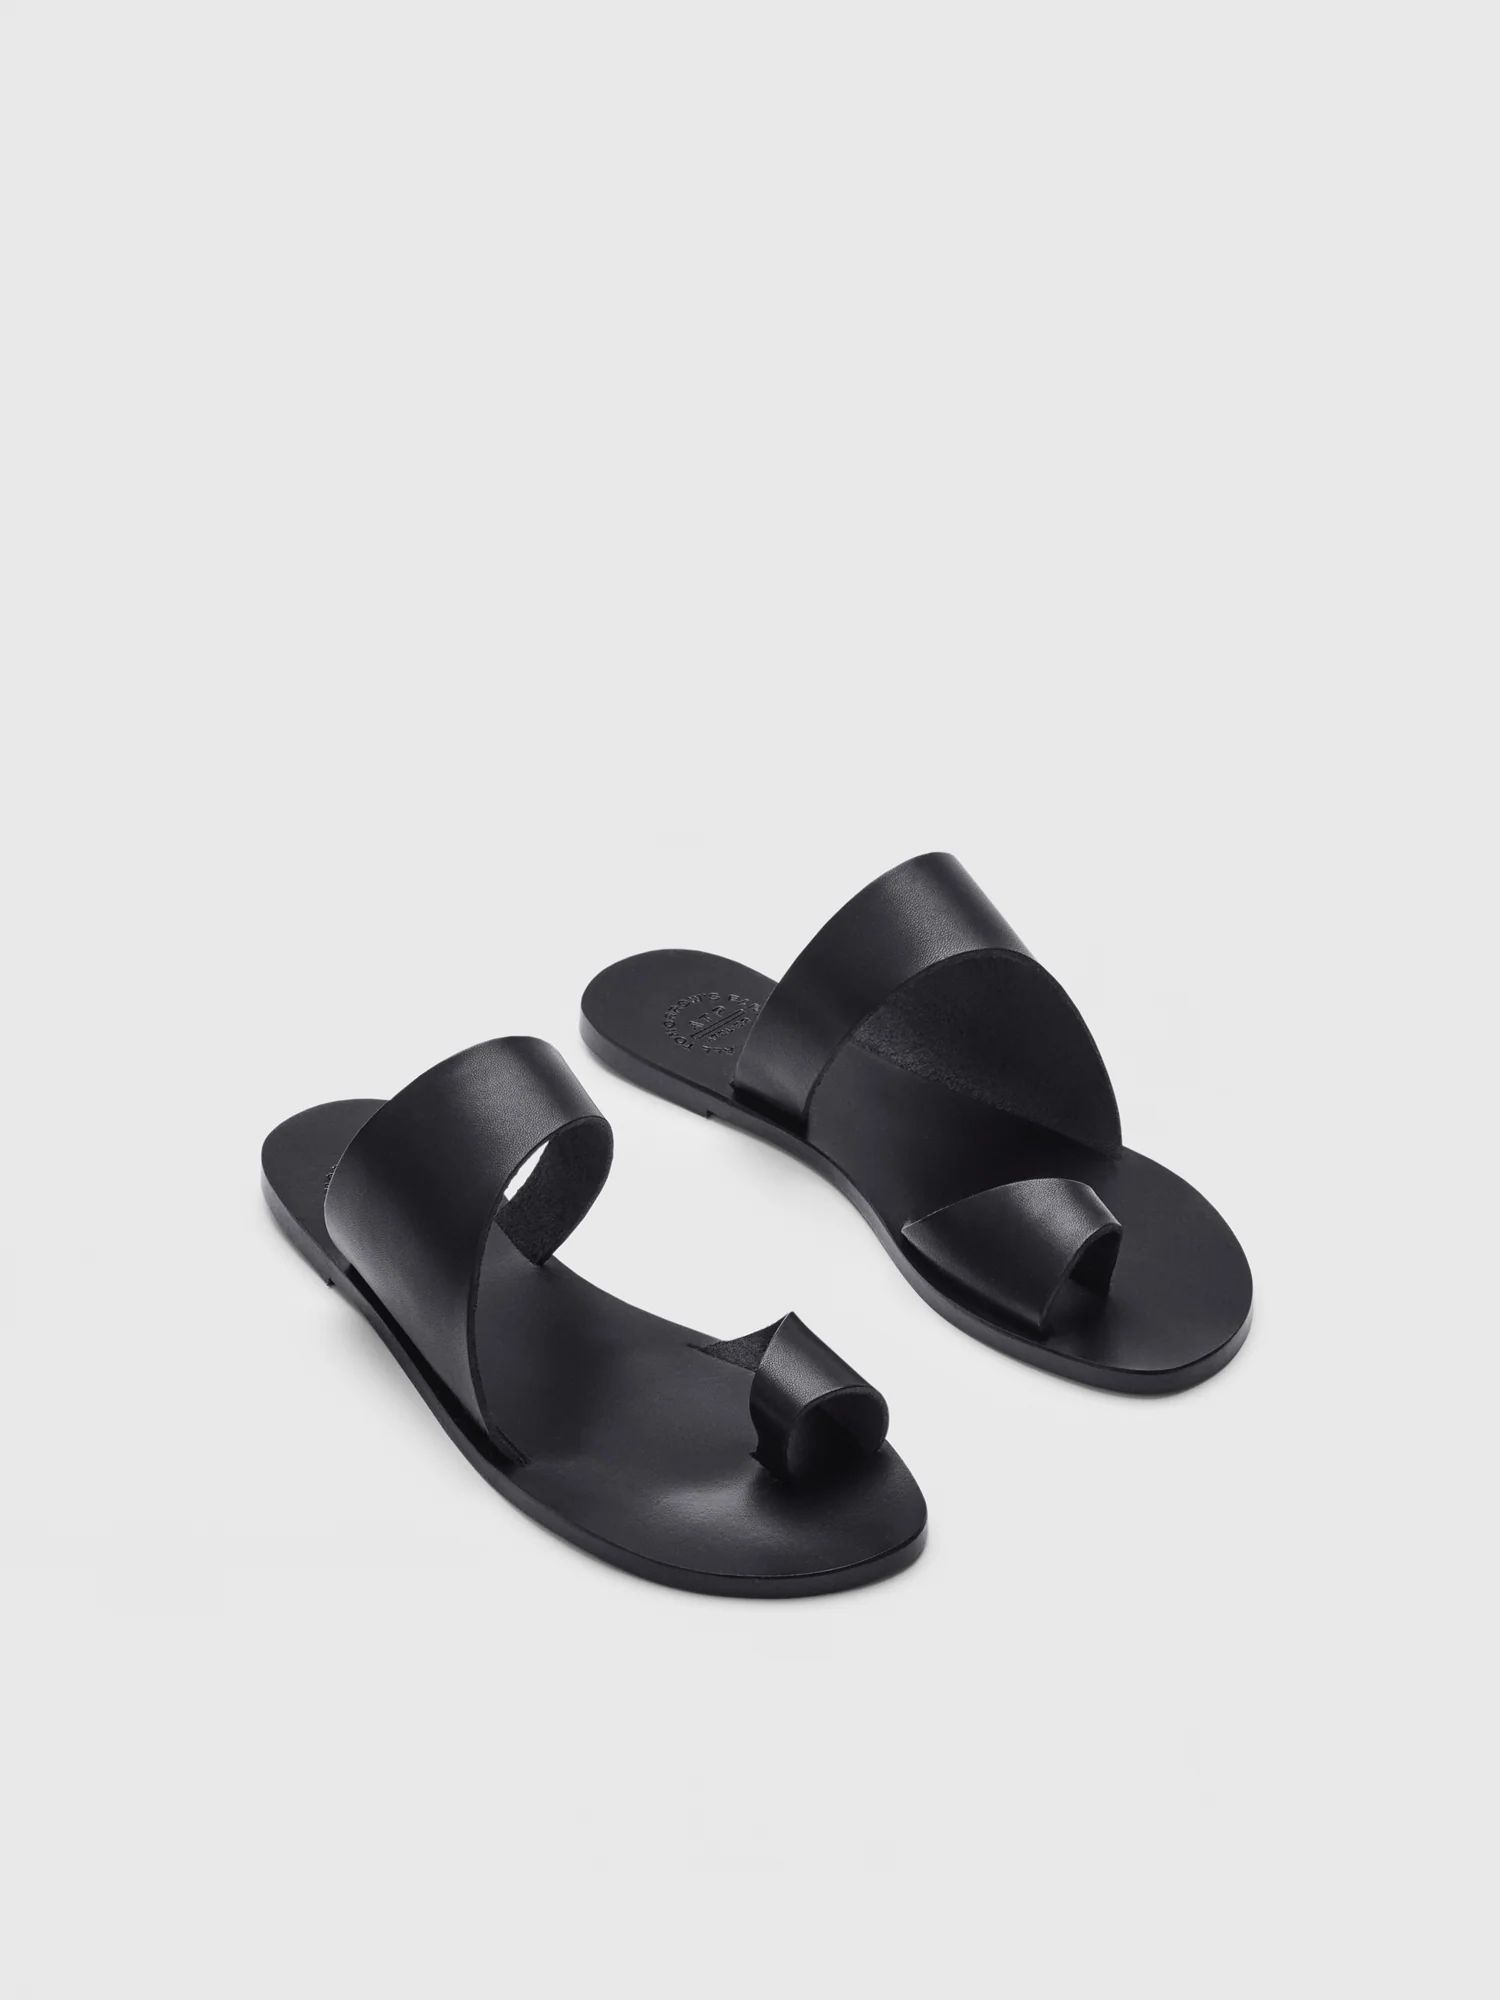 Centola Black Leather Cutout sandals | ATP Atelier